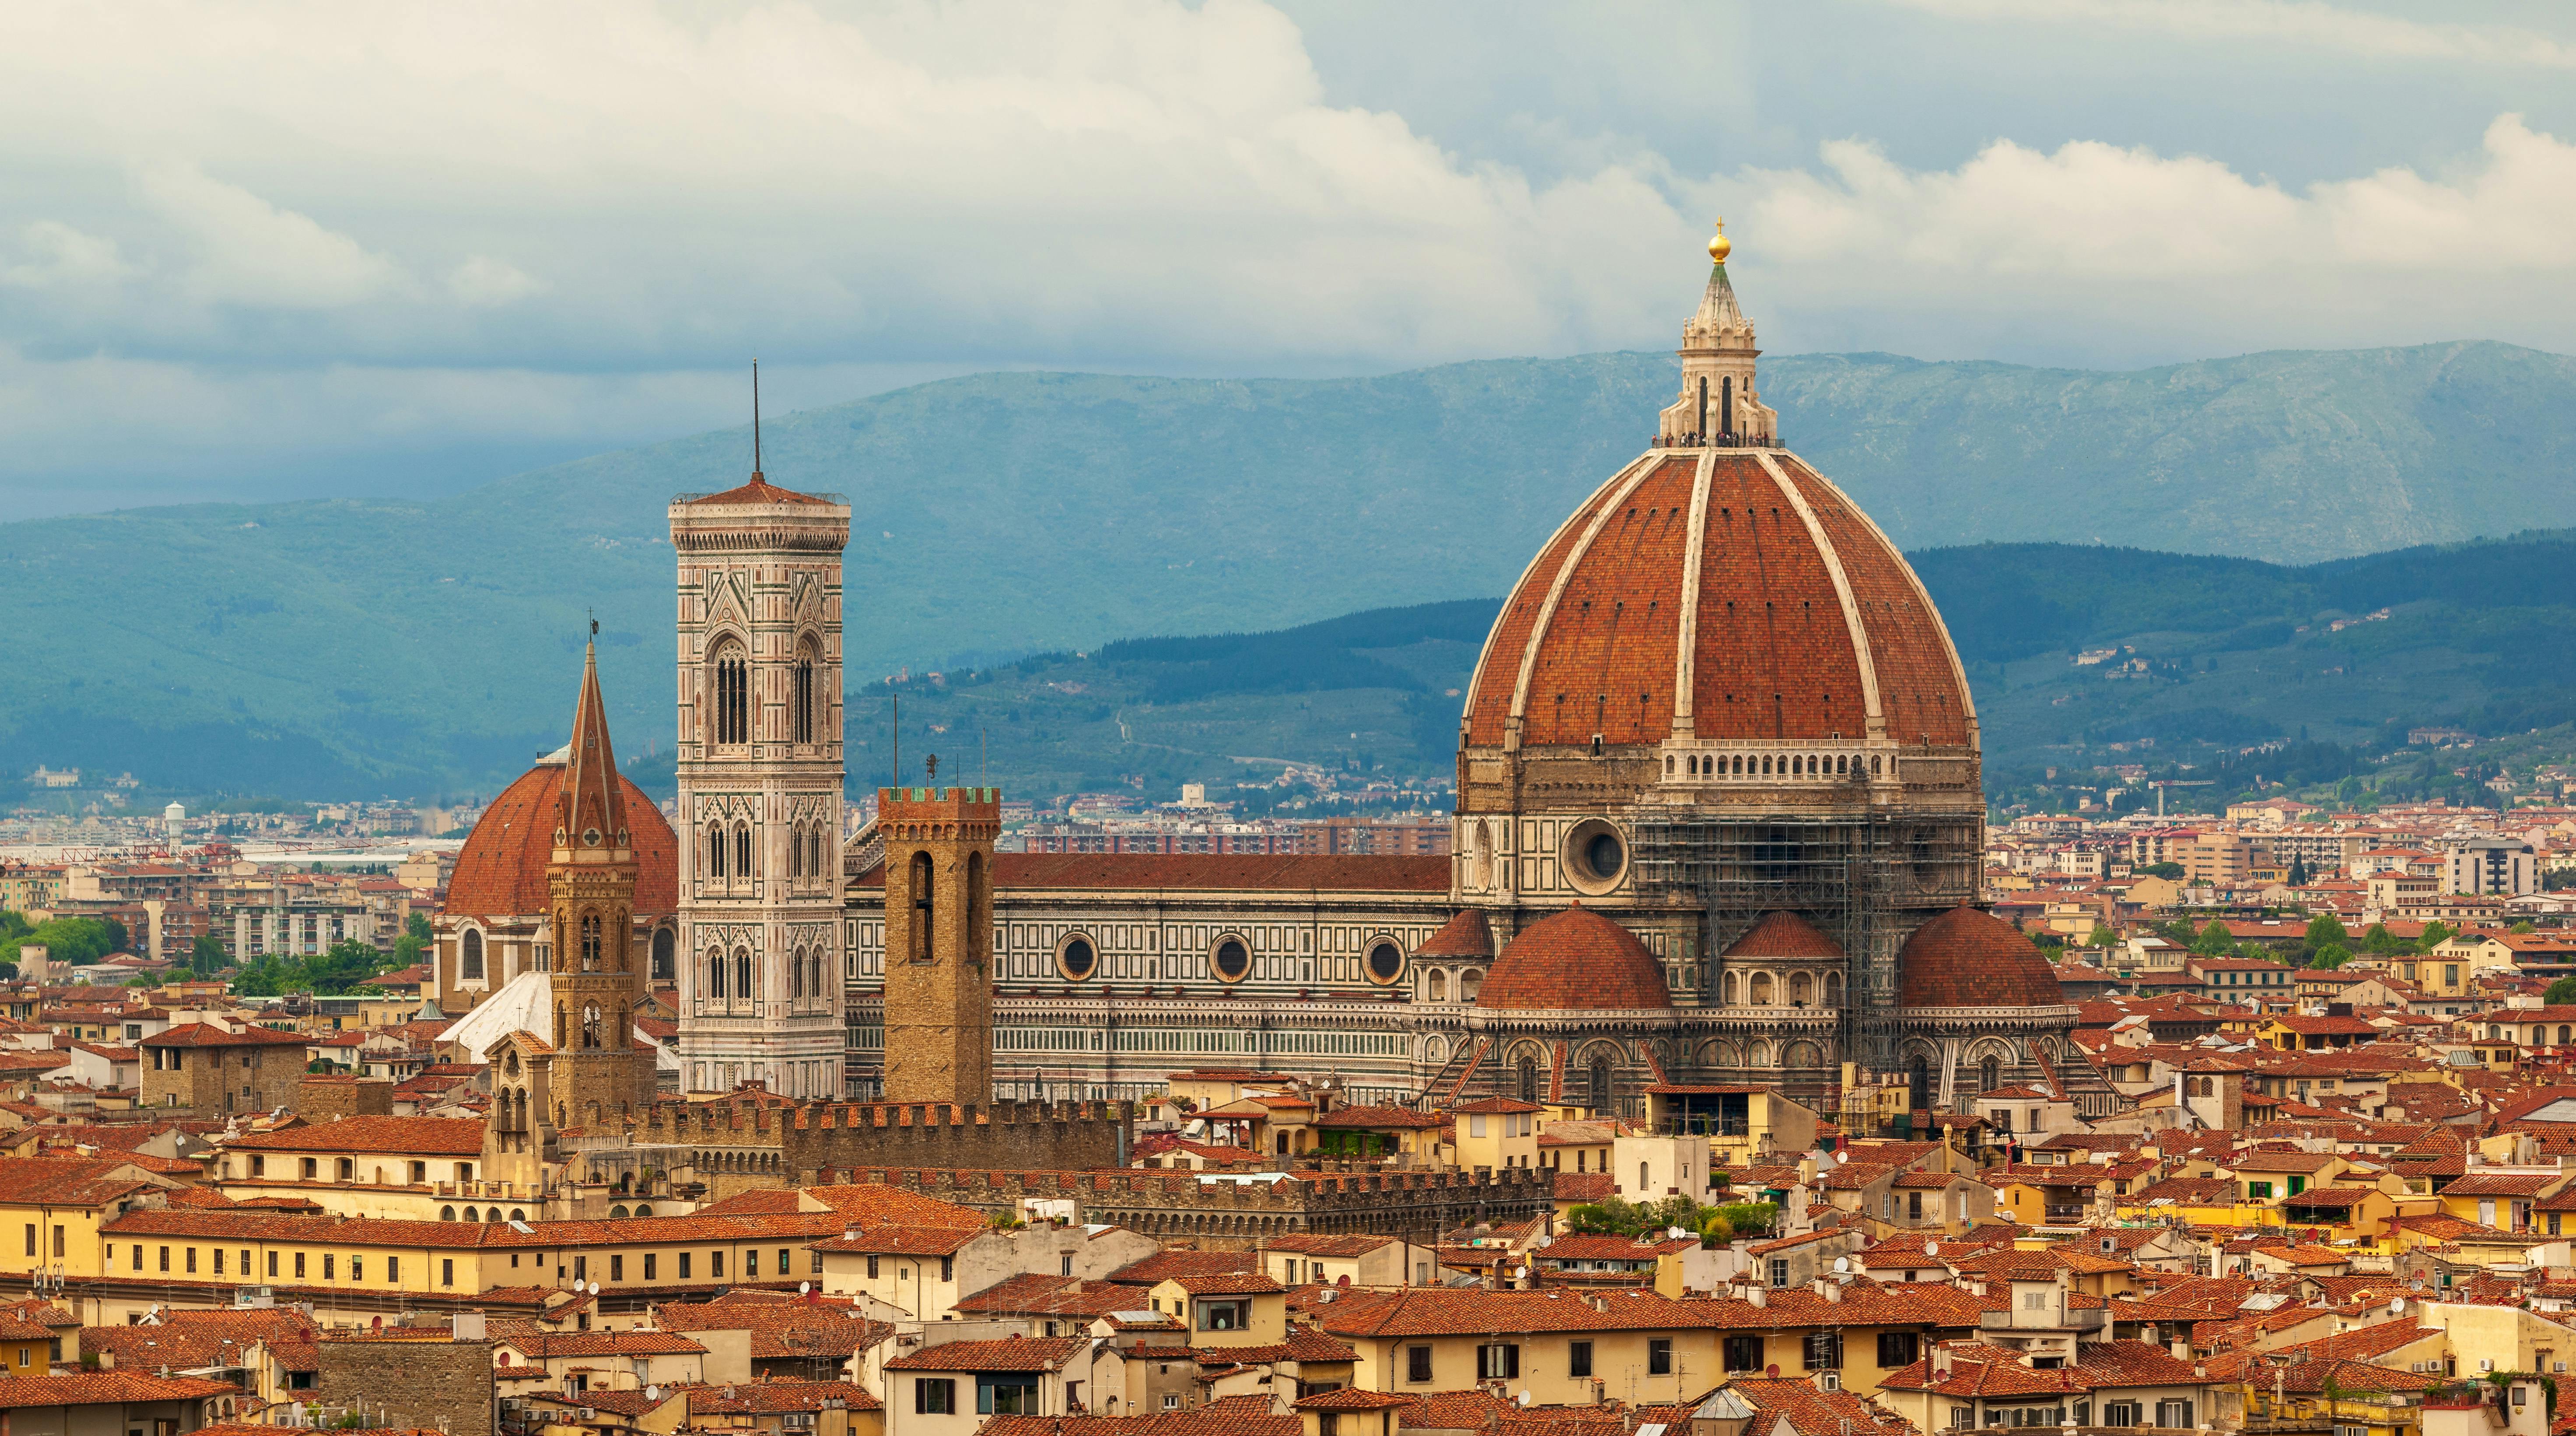 Visite de la ville de Florence depuis Venise en train à grande vitesse